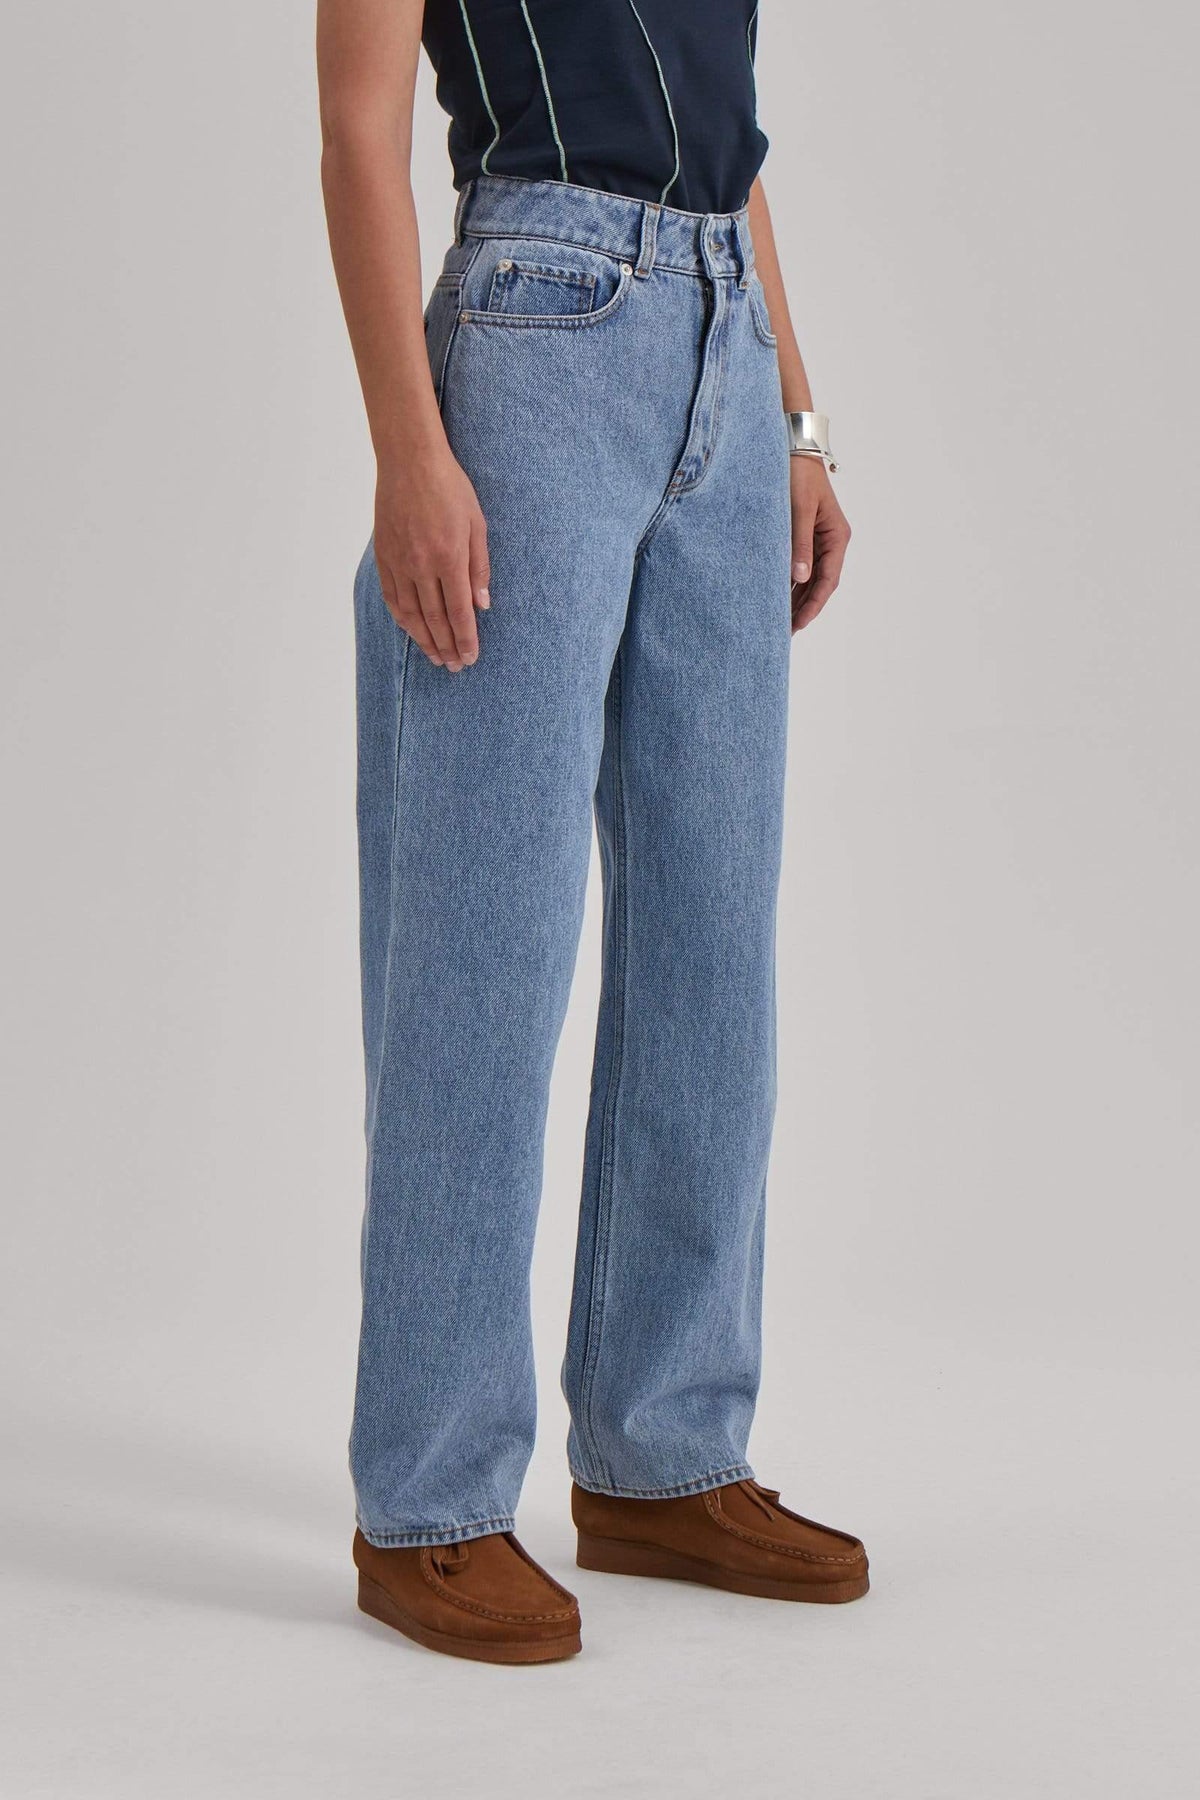 kemikalier storhedsvanvid tælle Wood Wood bukser ILO jeans vintage – Boutique Dig & Mig